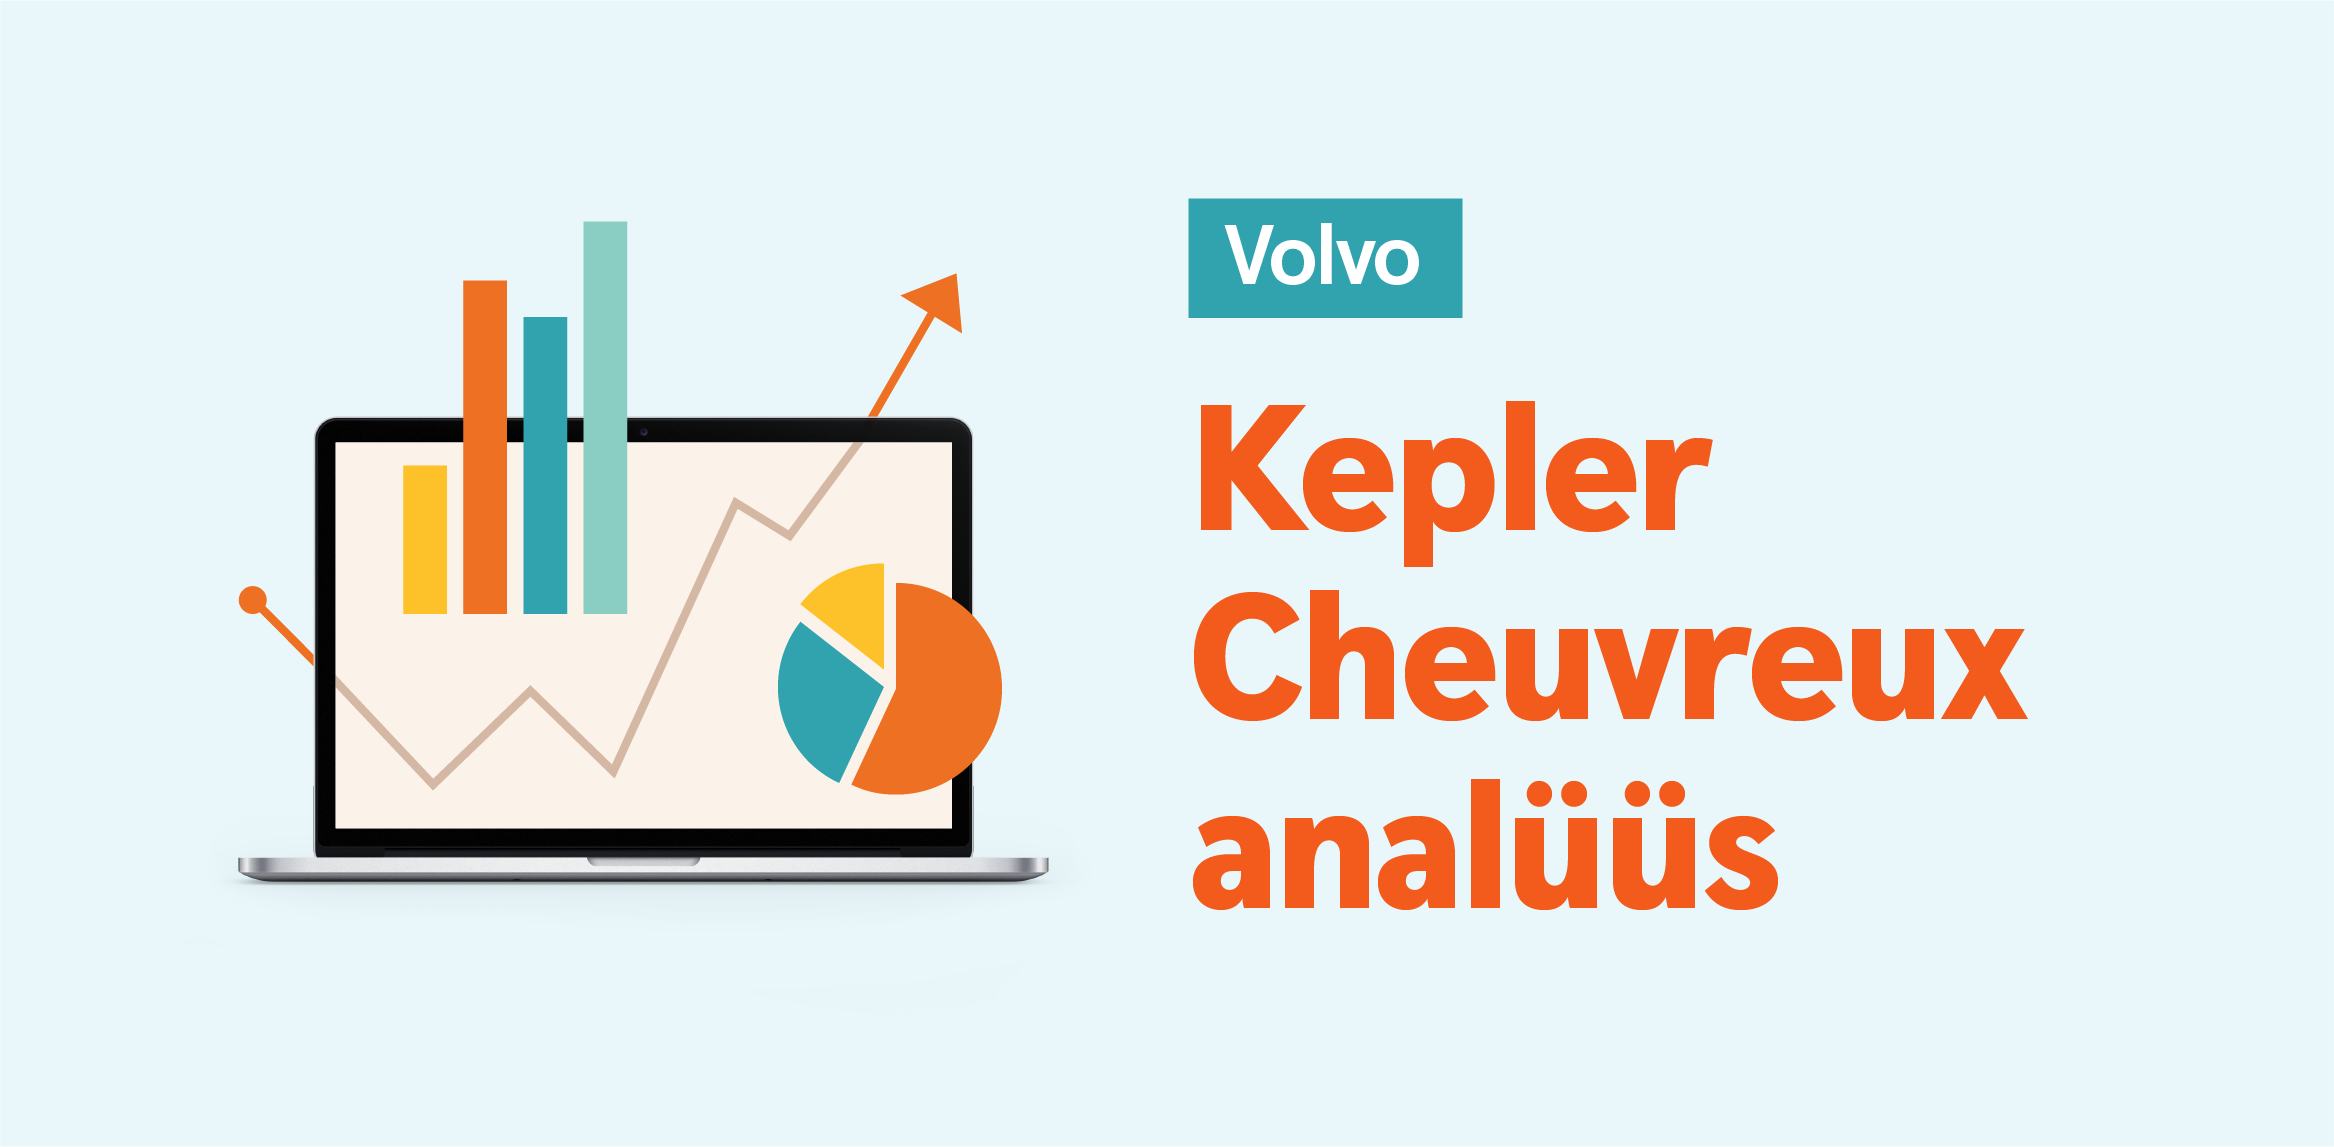 Kepler Cheuvreux: производственные проблемы Volvo отступают